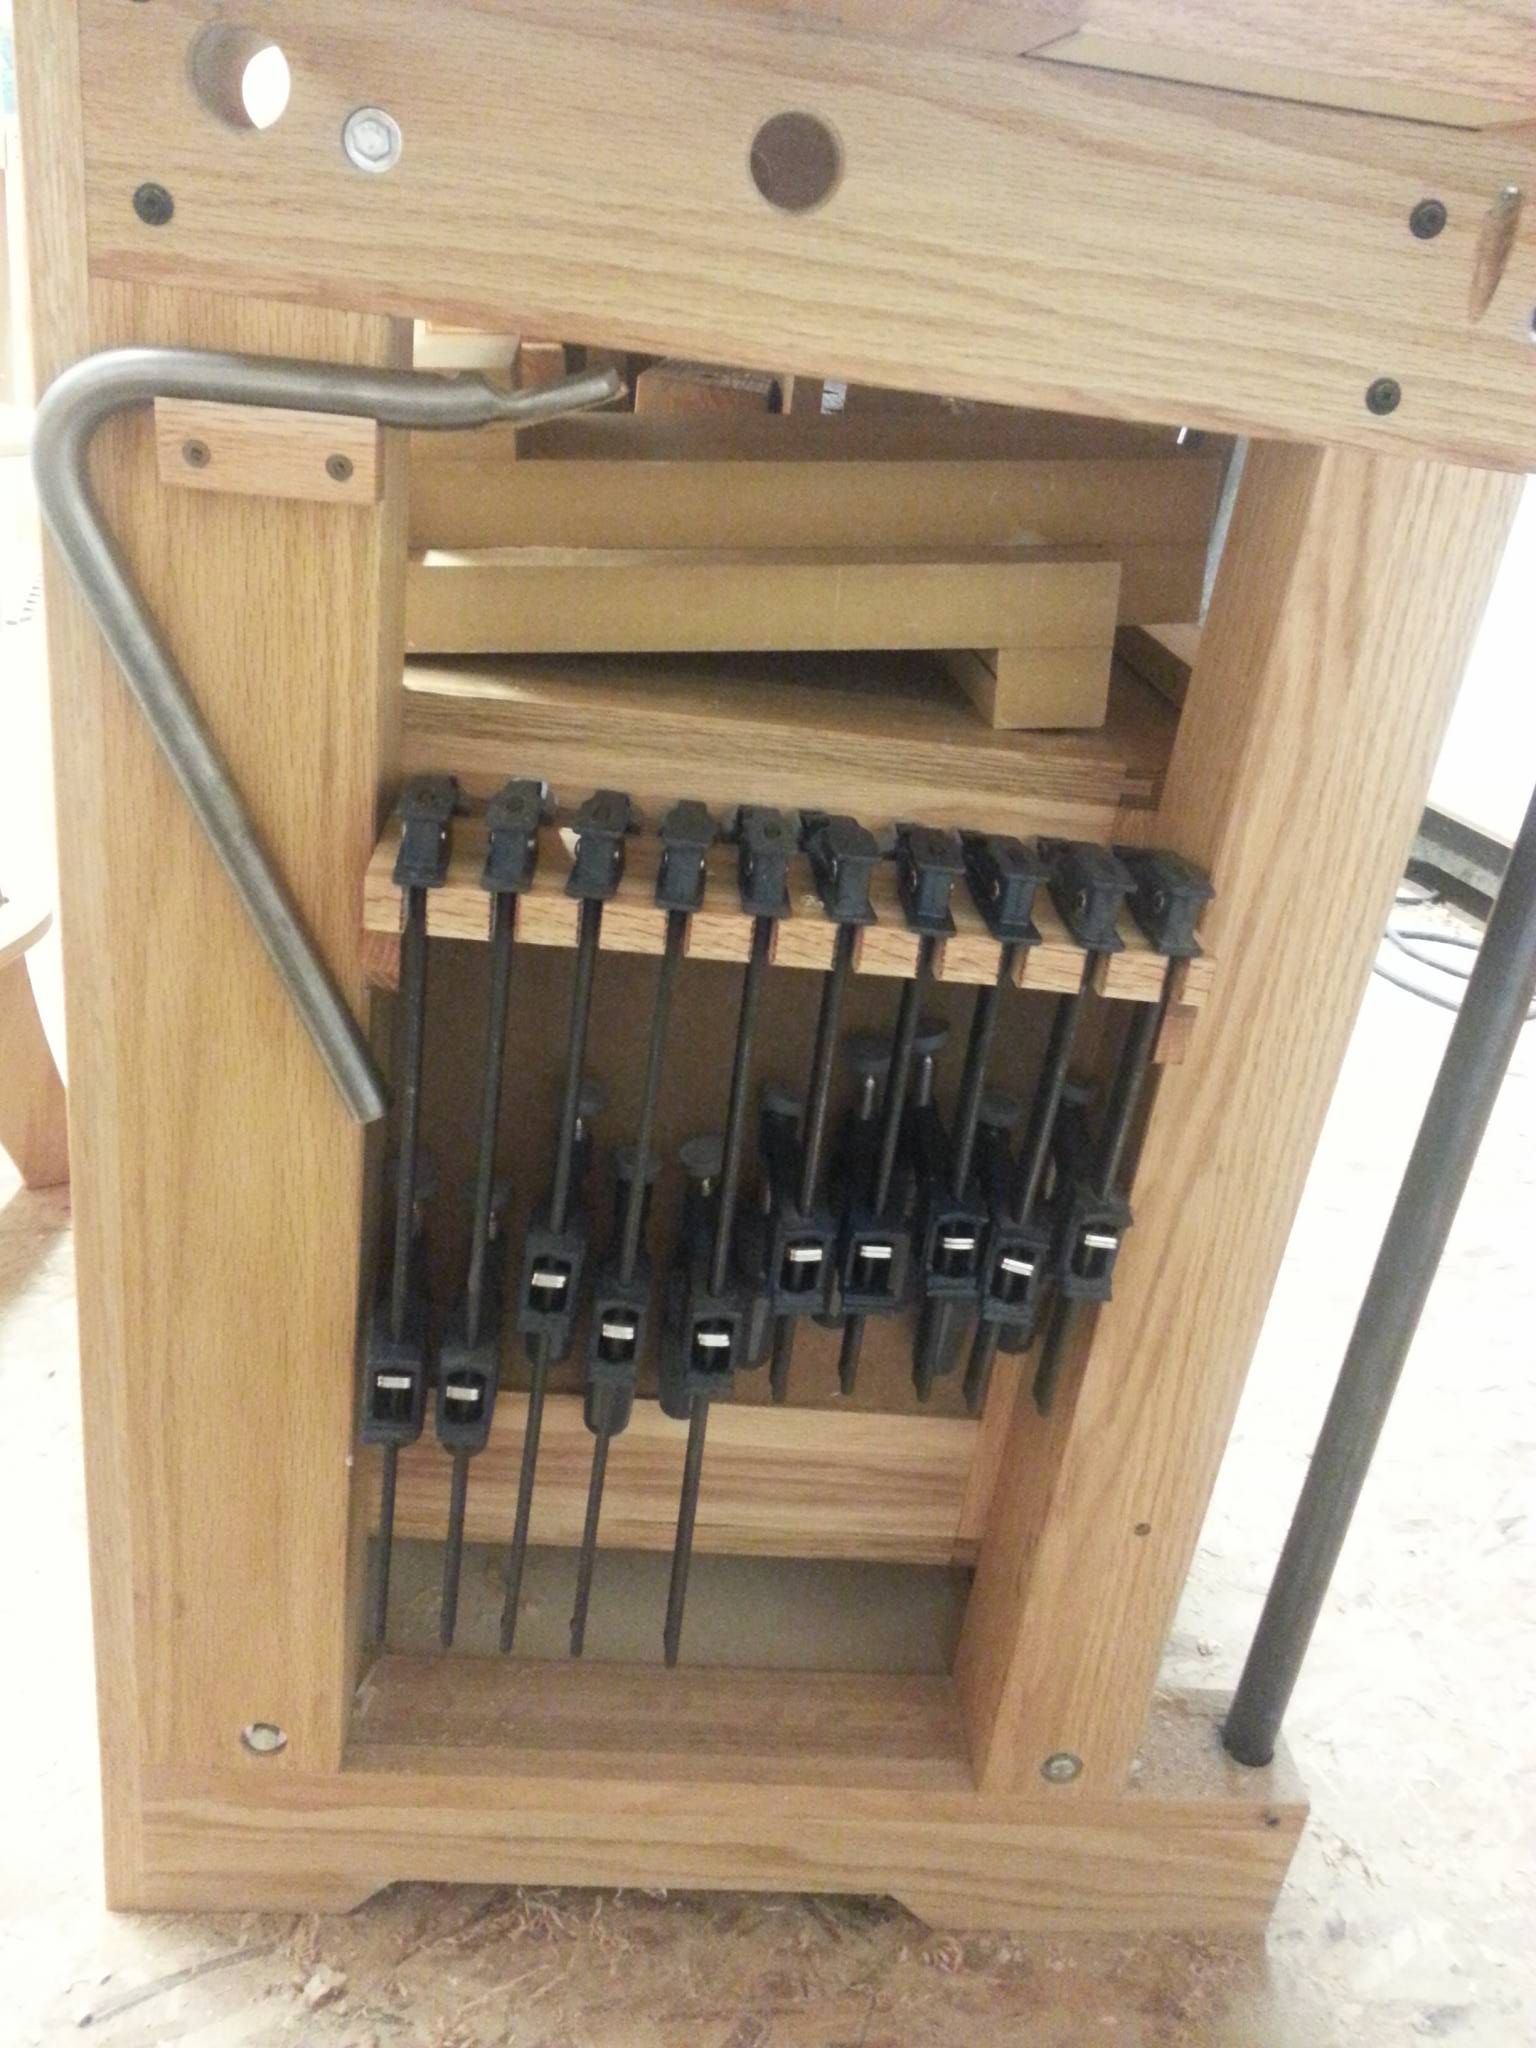 Workbench - clamp rack between legs